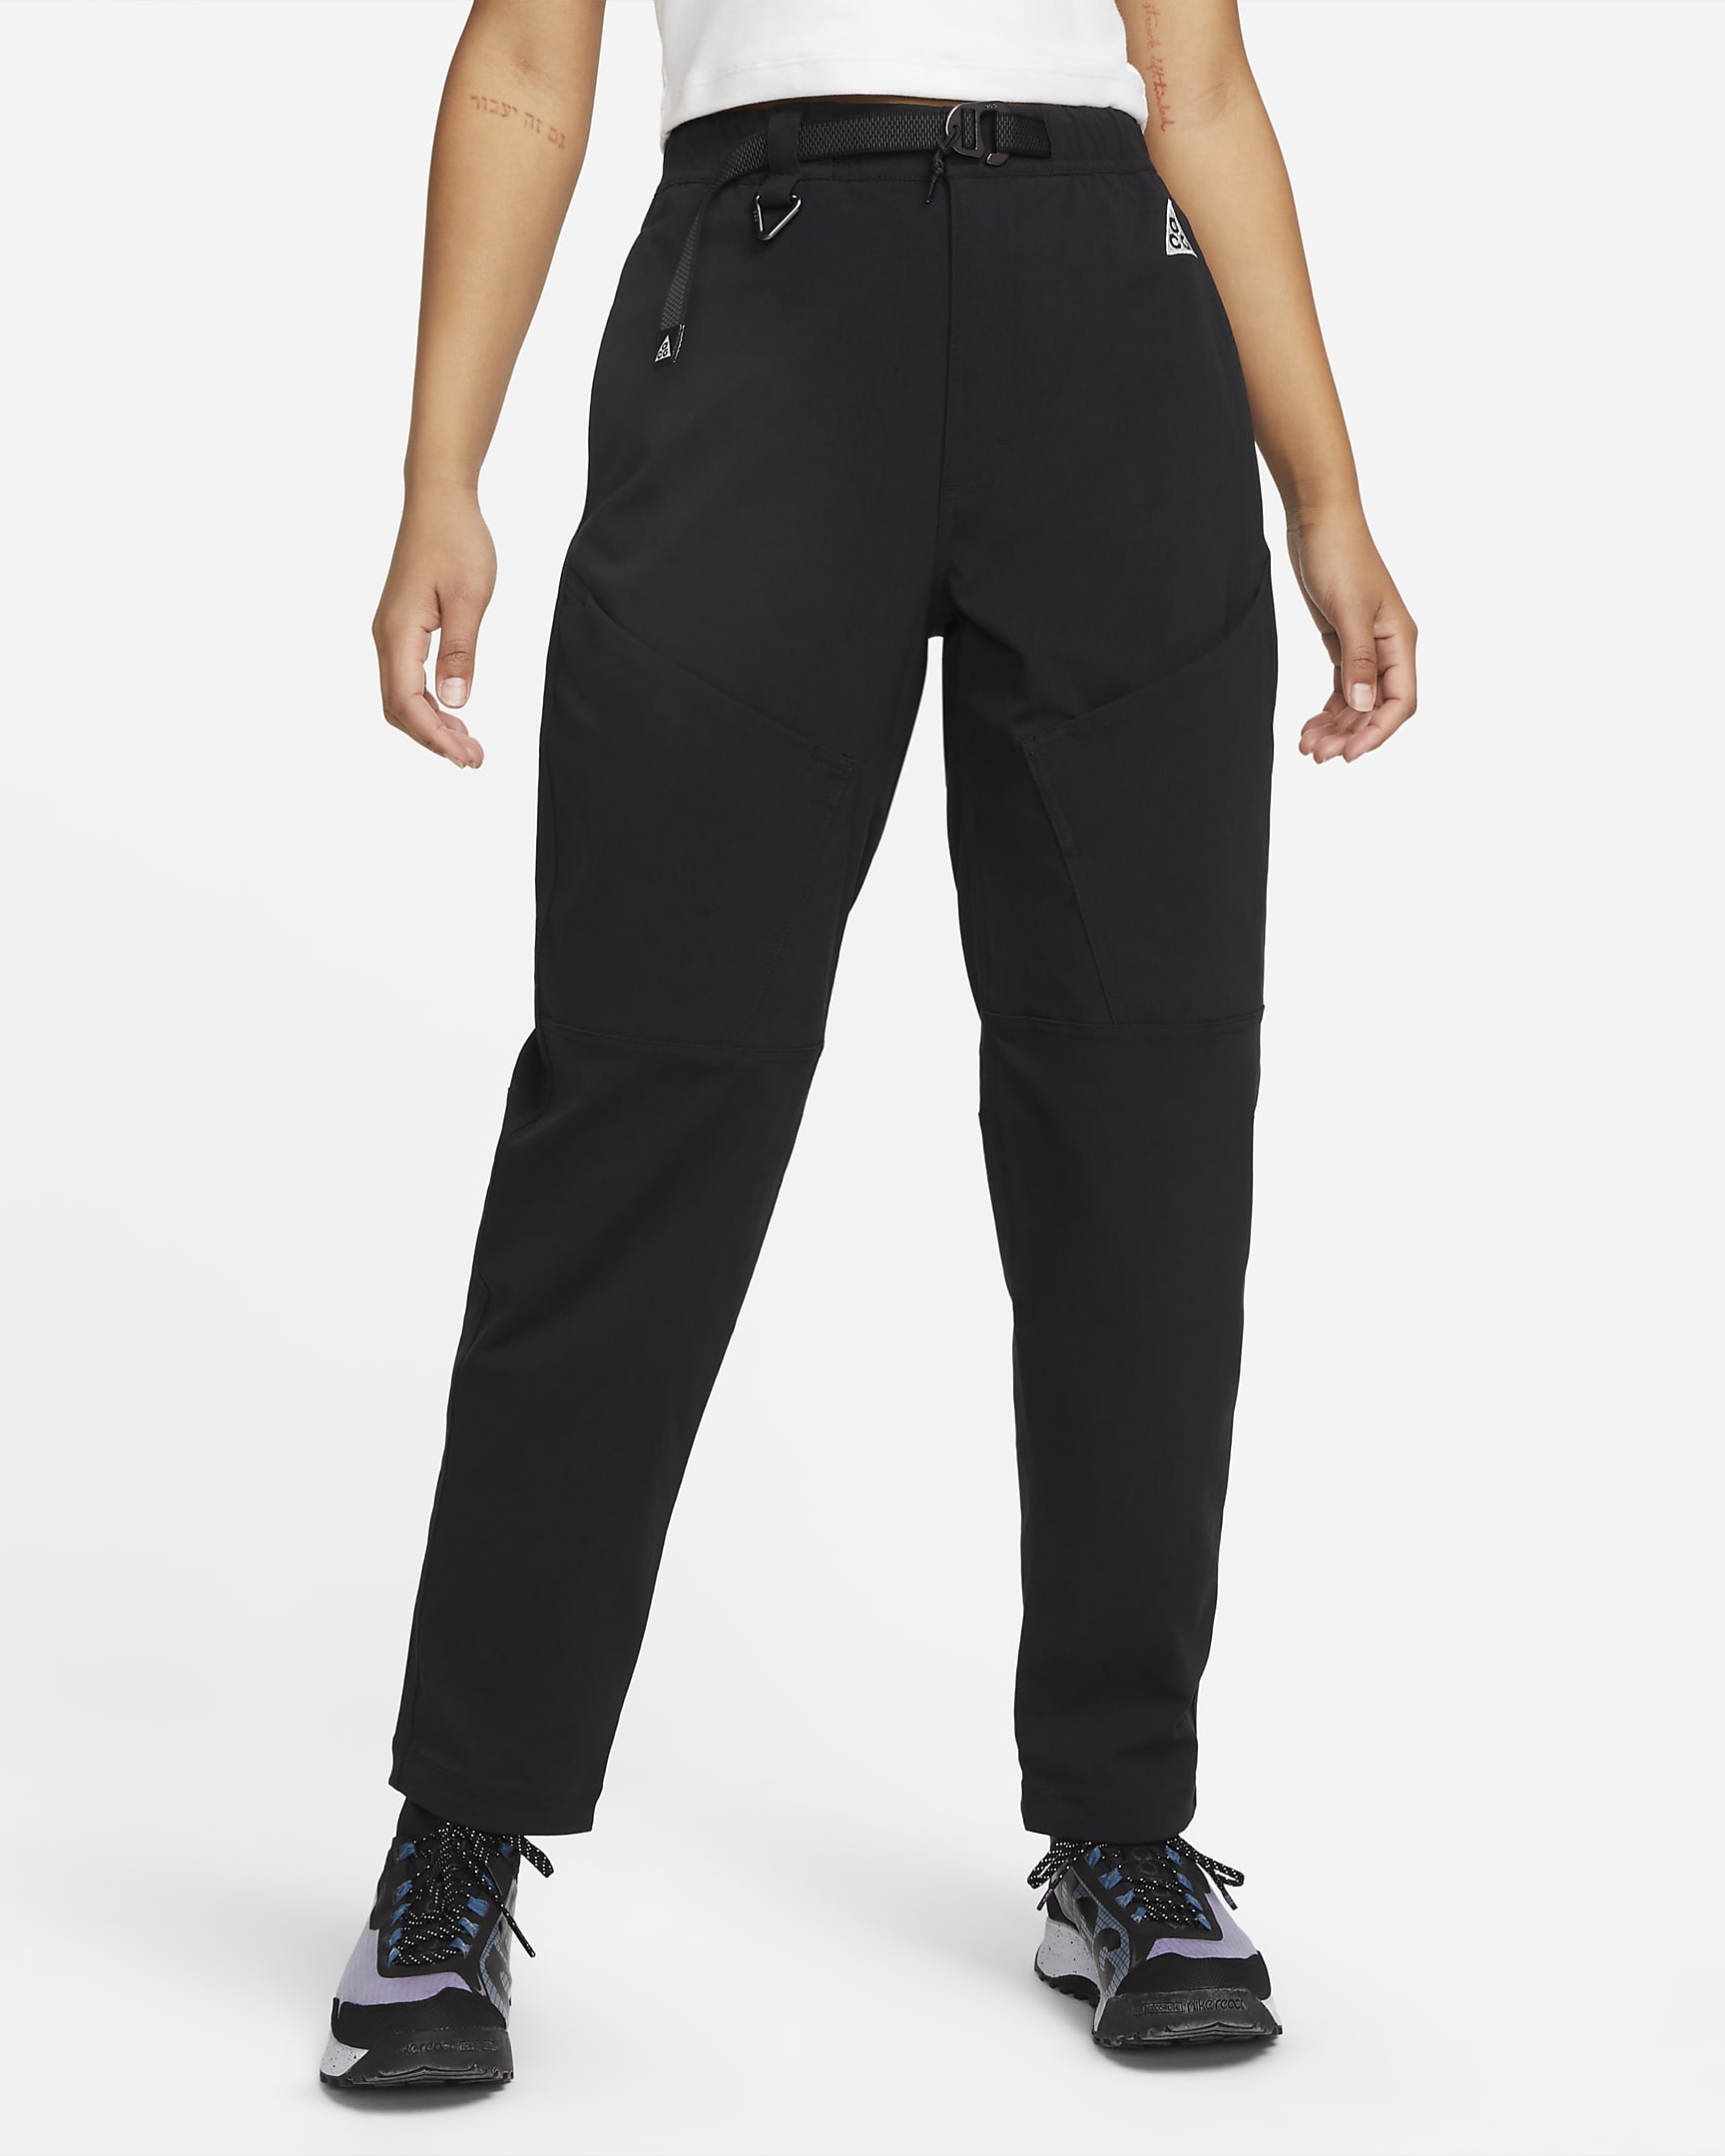 Pantalon de randonnée taille mi-haute Nike ACG pour femme - Noir/Summit White